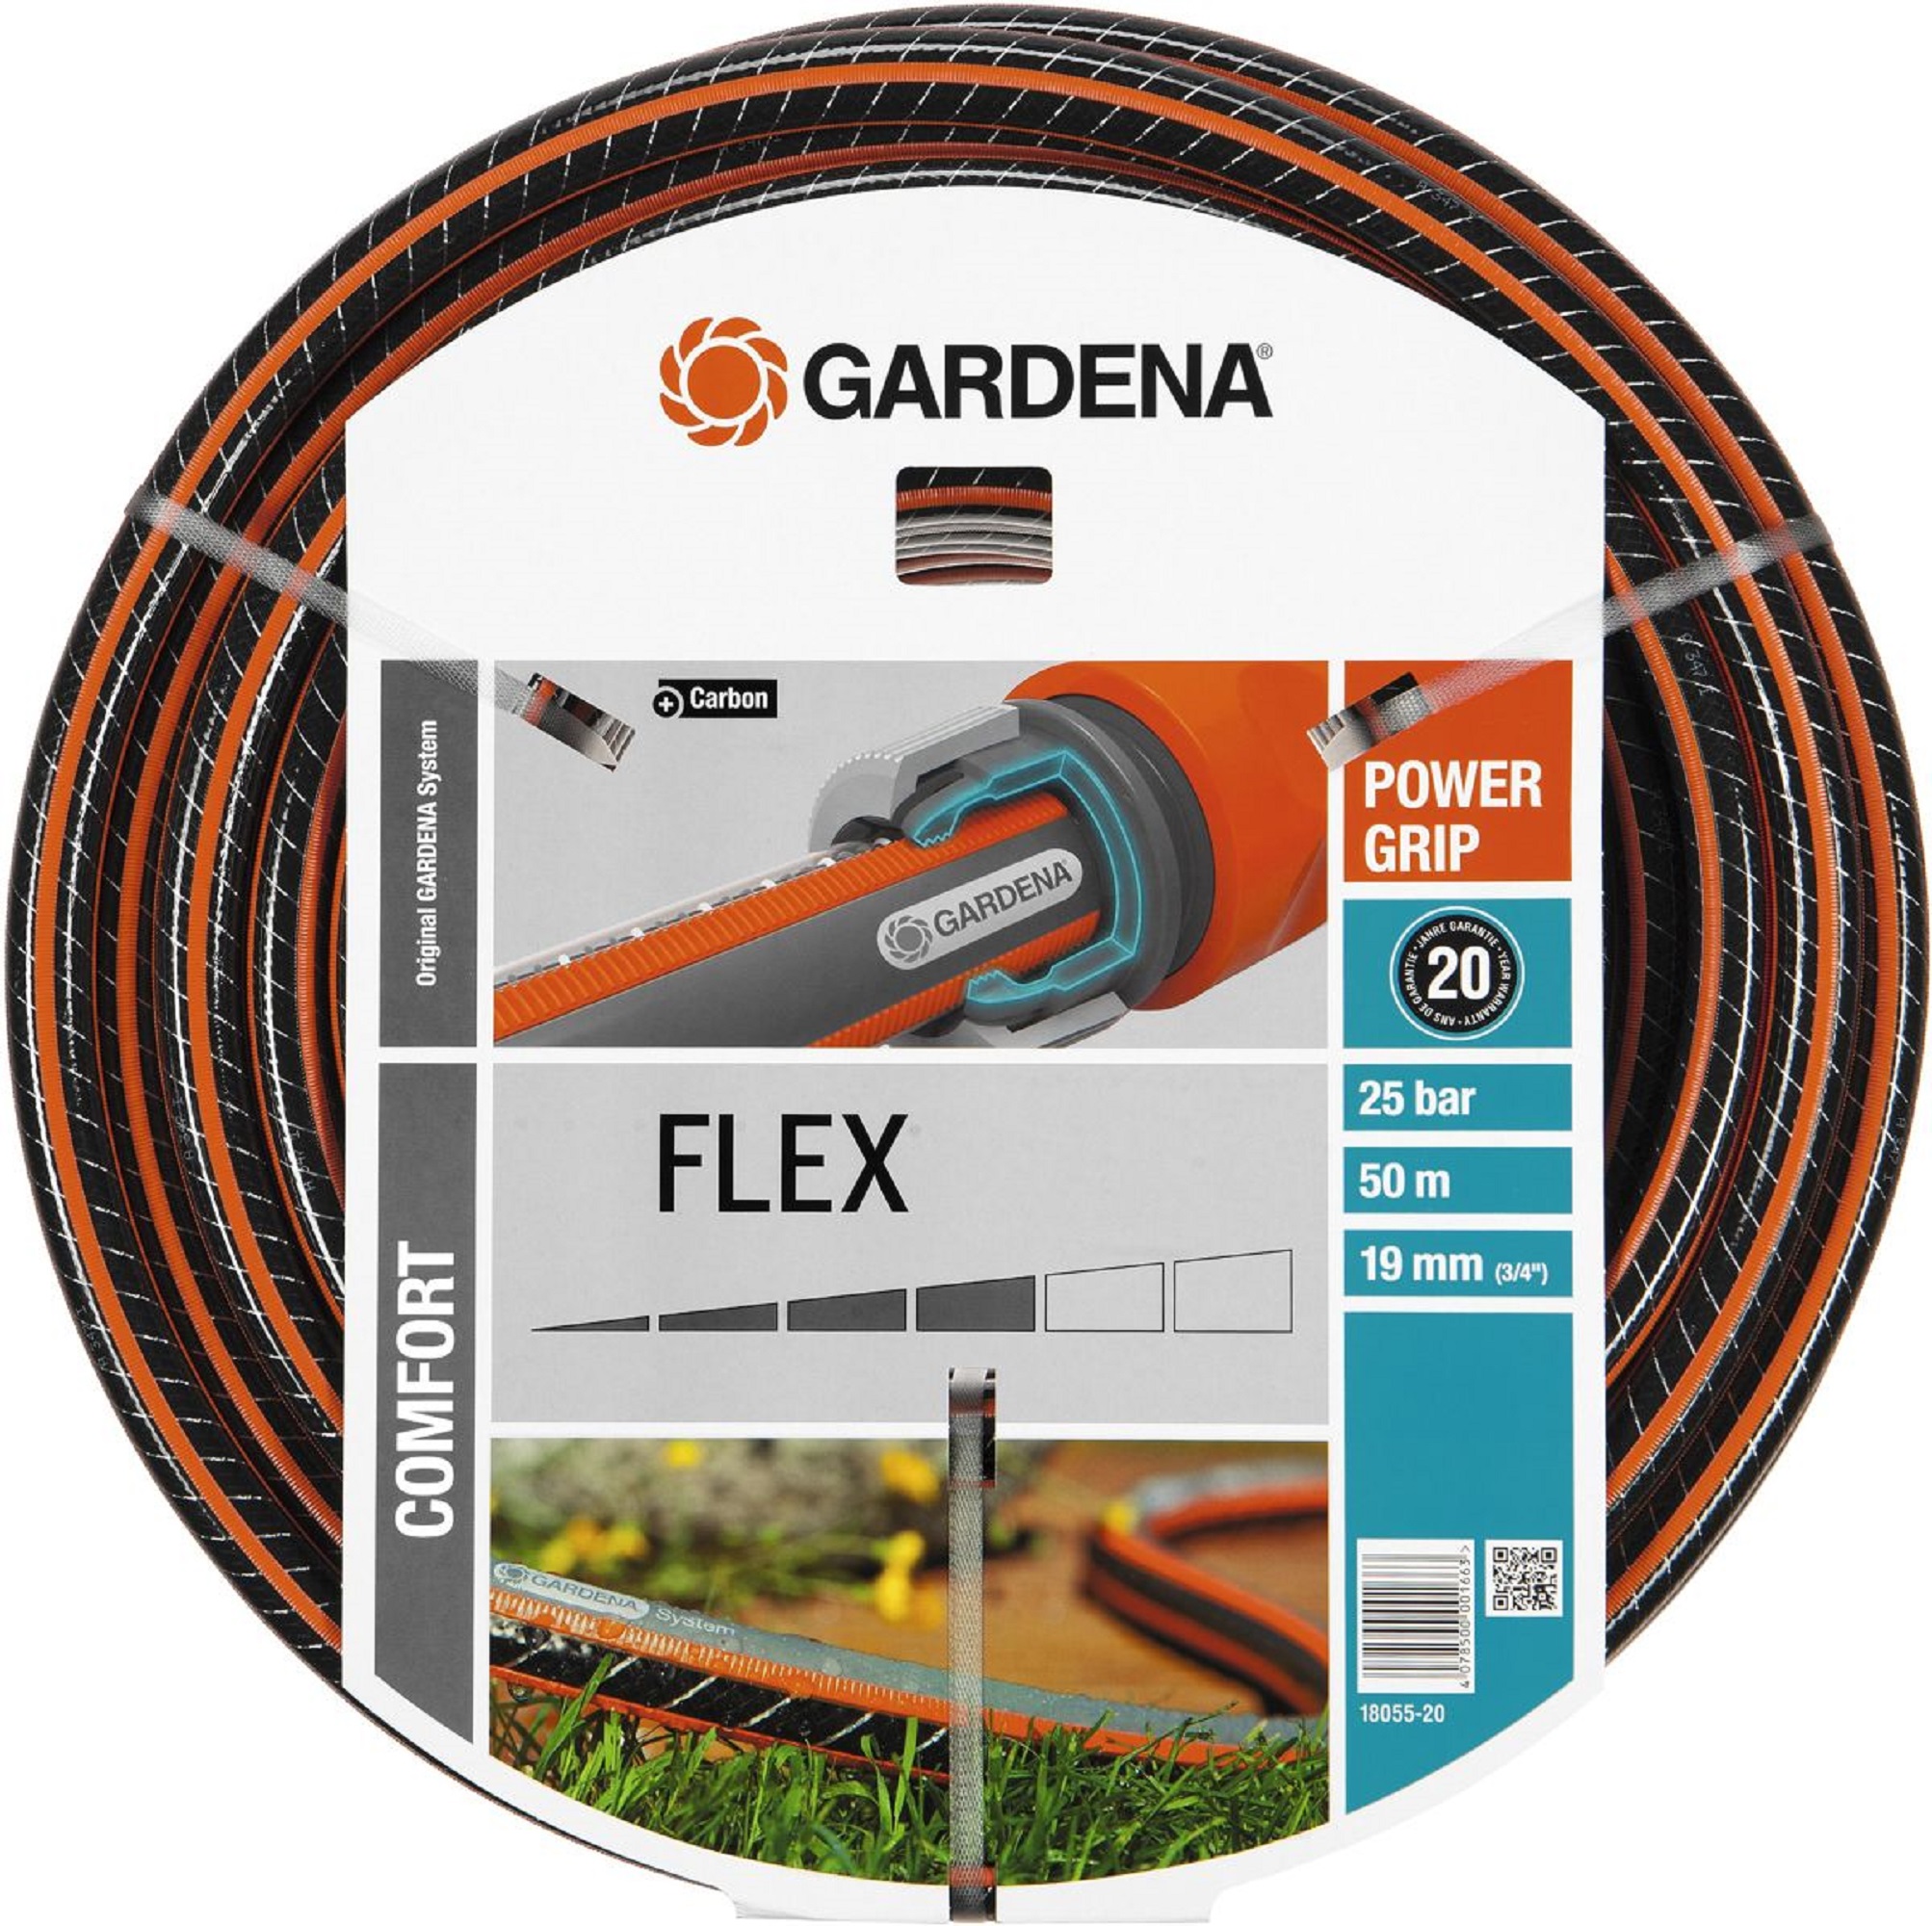 Gardena Comfort FLEX waterslang 19mm (3/4") 50 meter - Jr. Technisch Handelsbureau